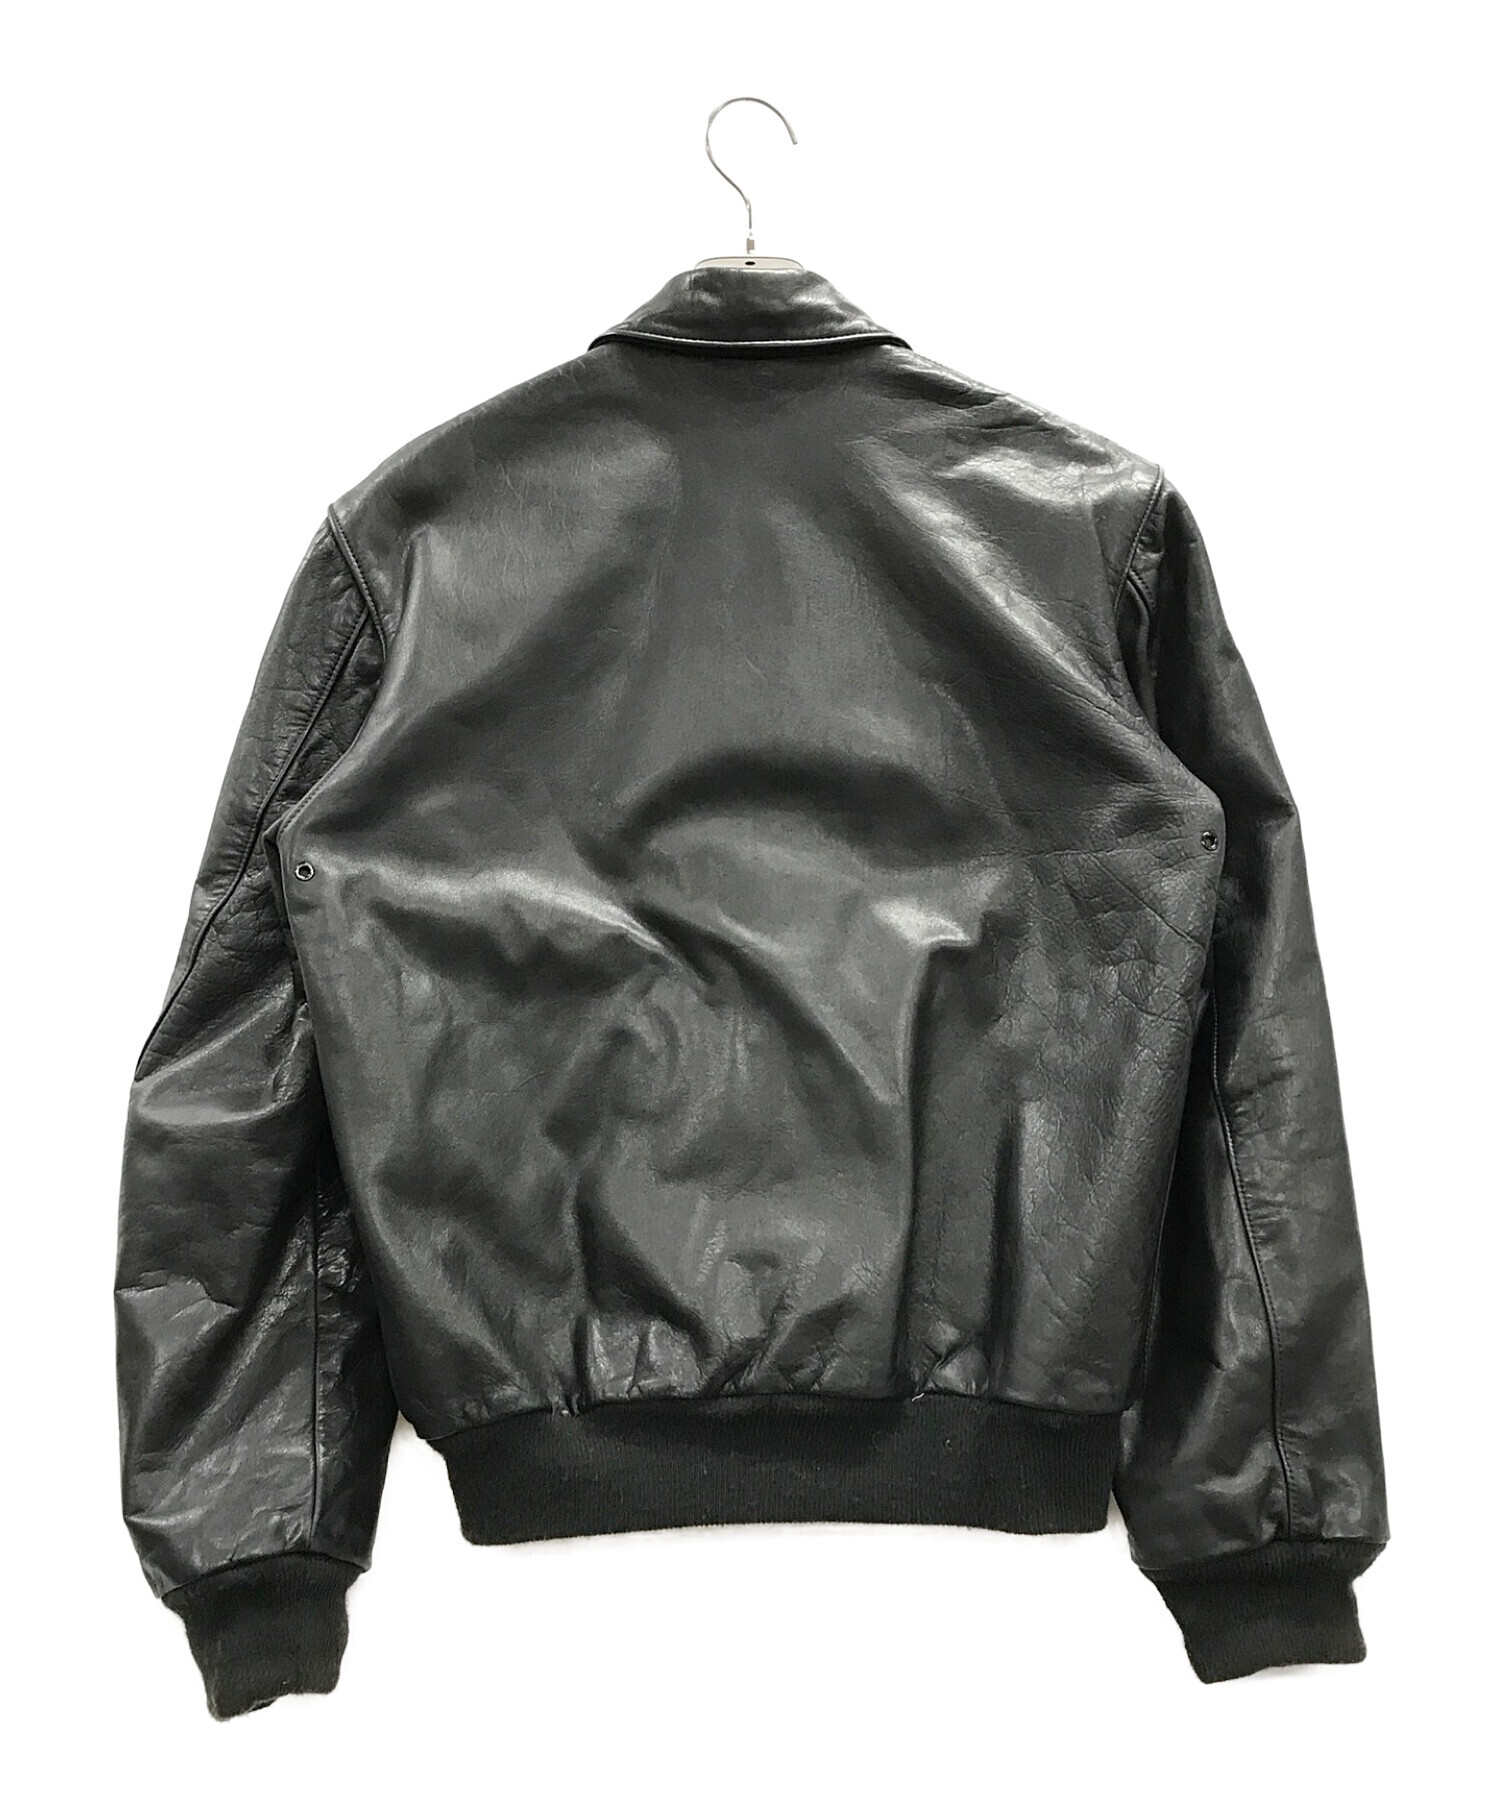 San Francisco Avation supply (サンフランシスコ・アビエーションサプライ) レザージャケット ブラック サイズ:UK38